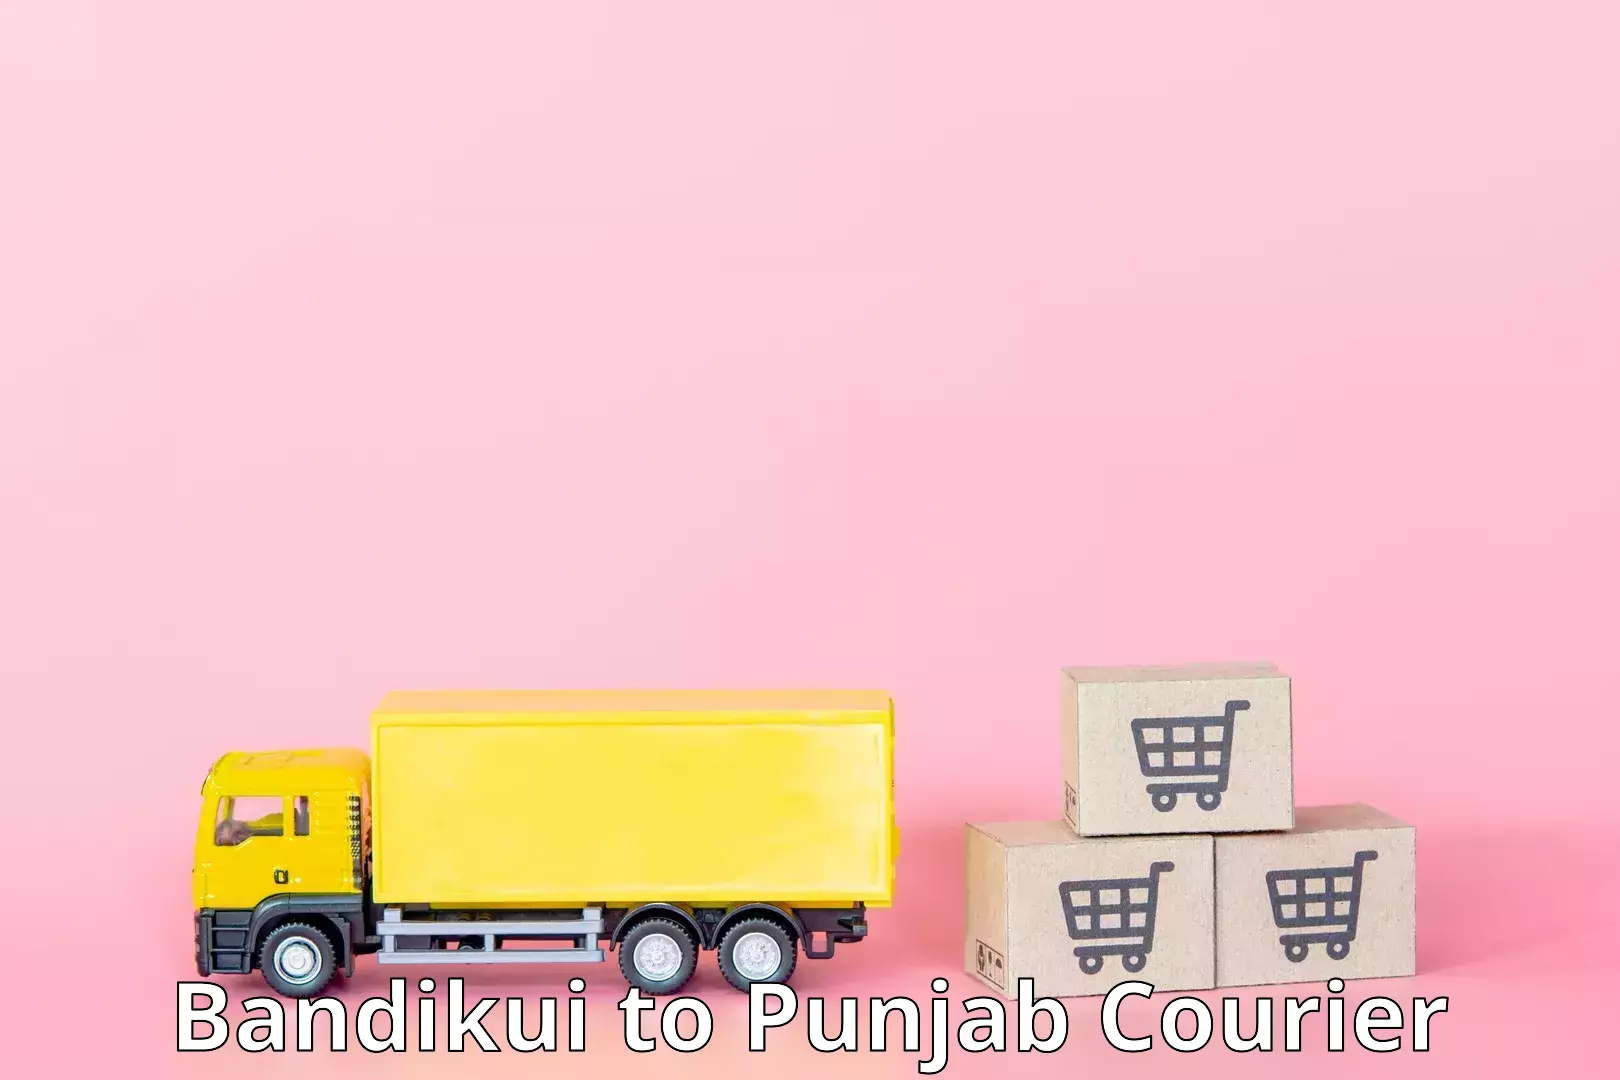 Express package services Bandikui to Punjab